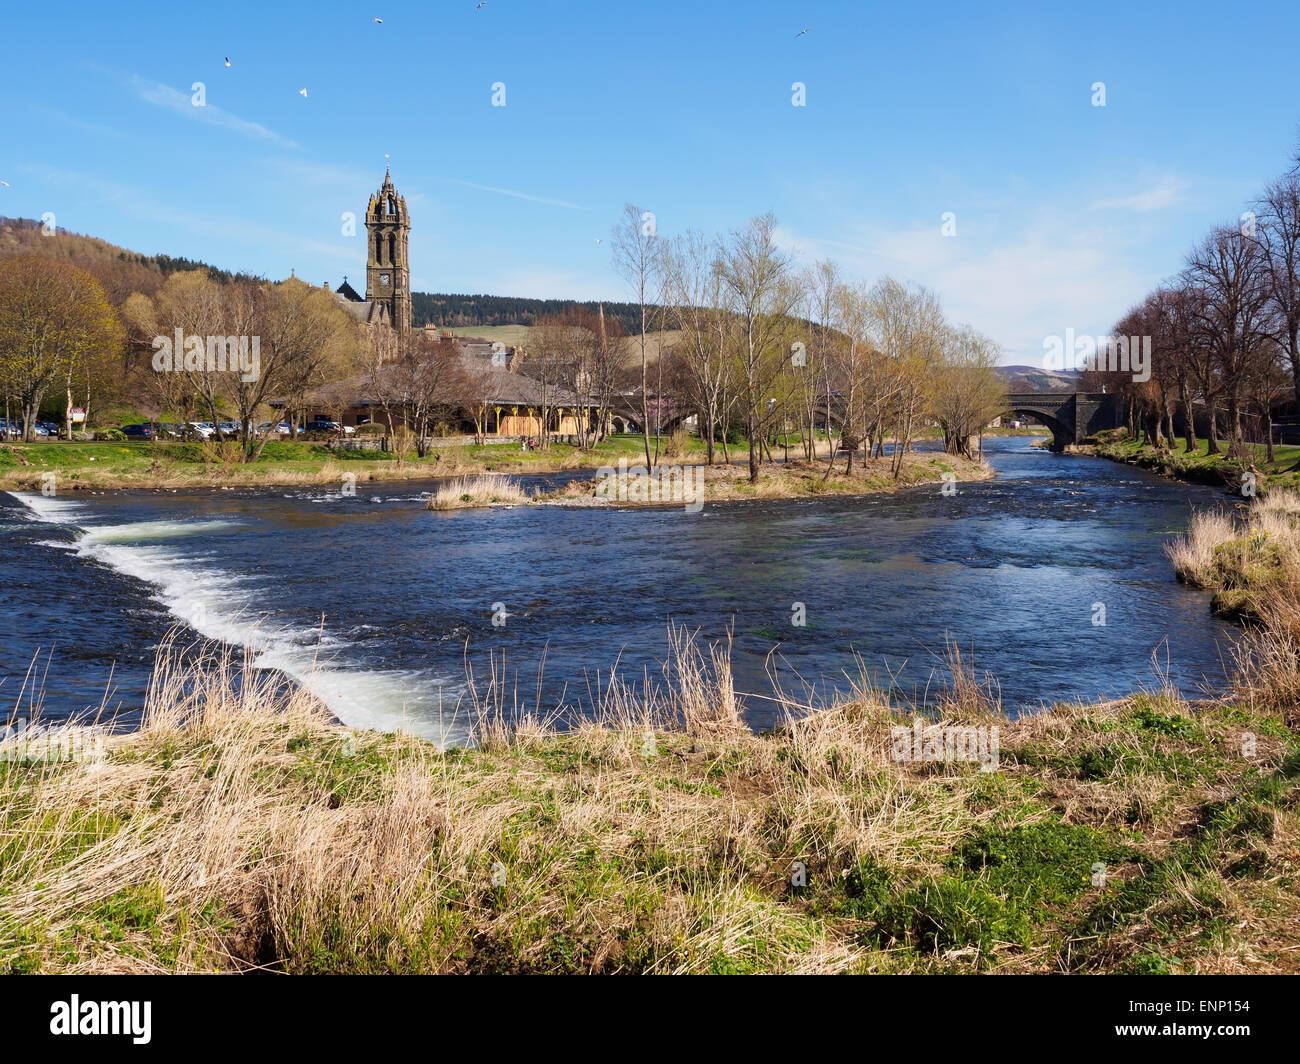 La ville de Peebles dans la région des Scottish Borders, et la rivière Tweed. Banque D'Images